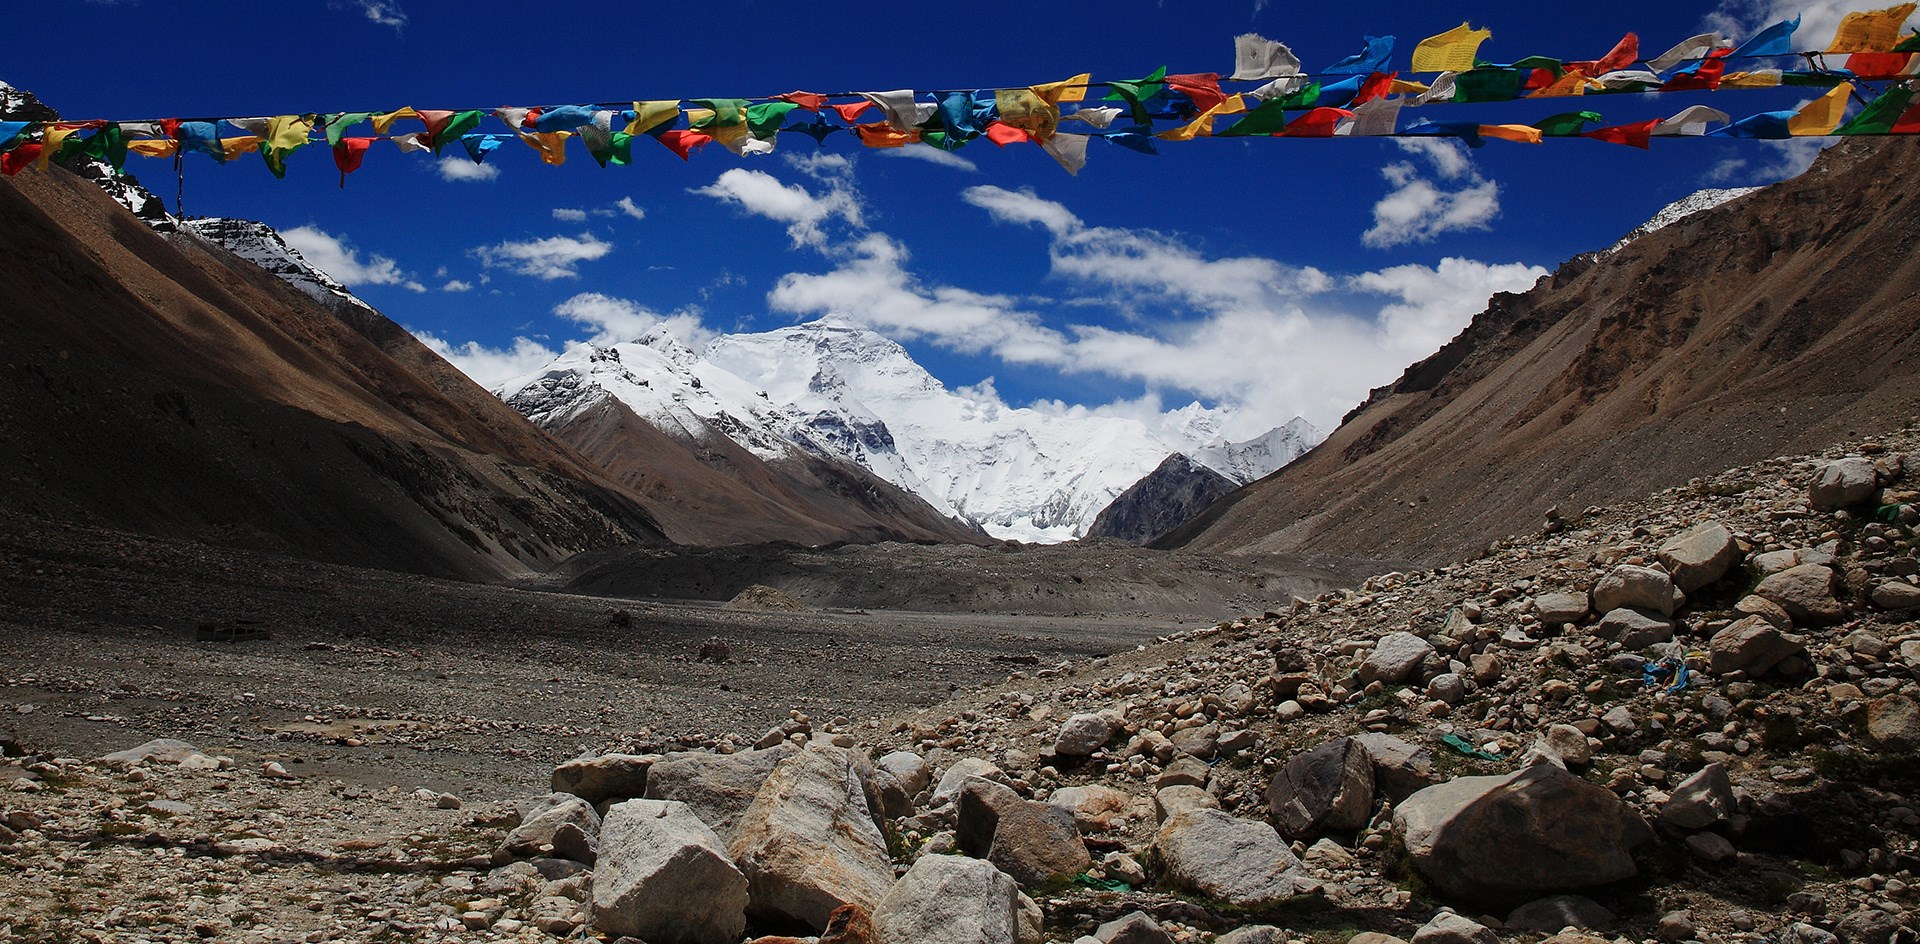 8848,86 Meter! Die Neueste Erhebung des Mount Everest (Qomolangma)